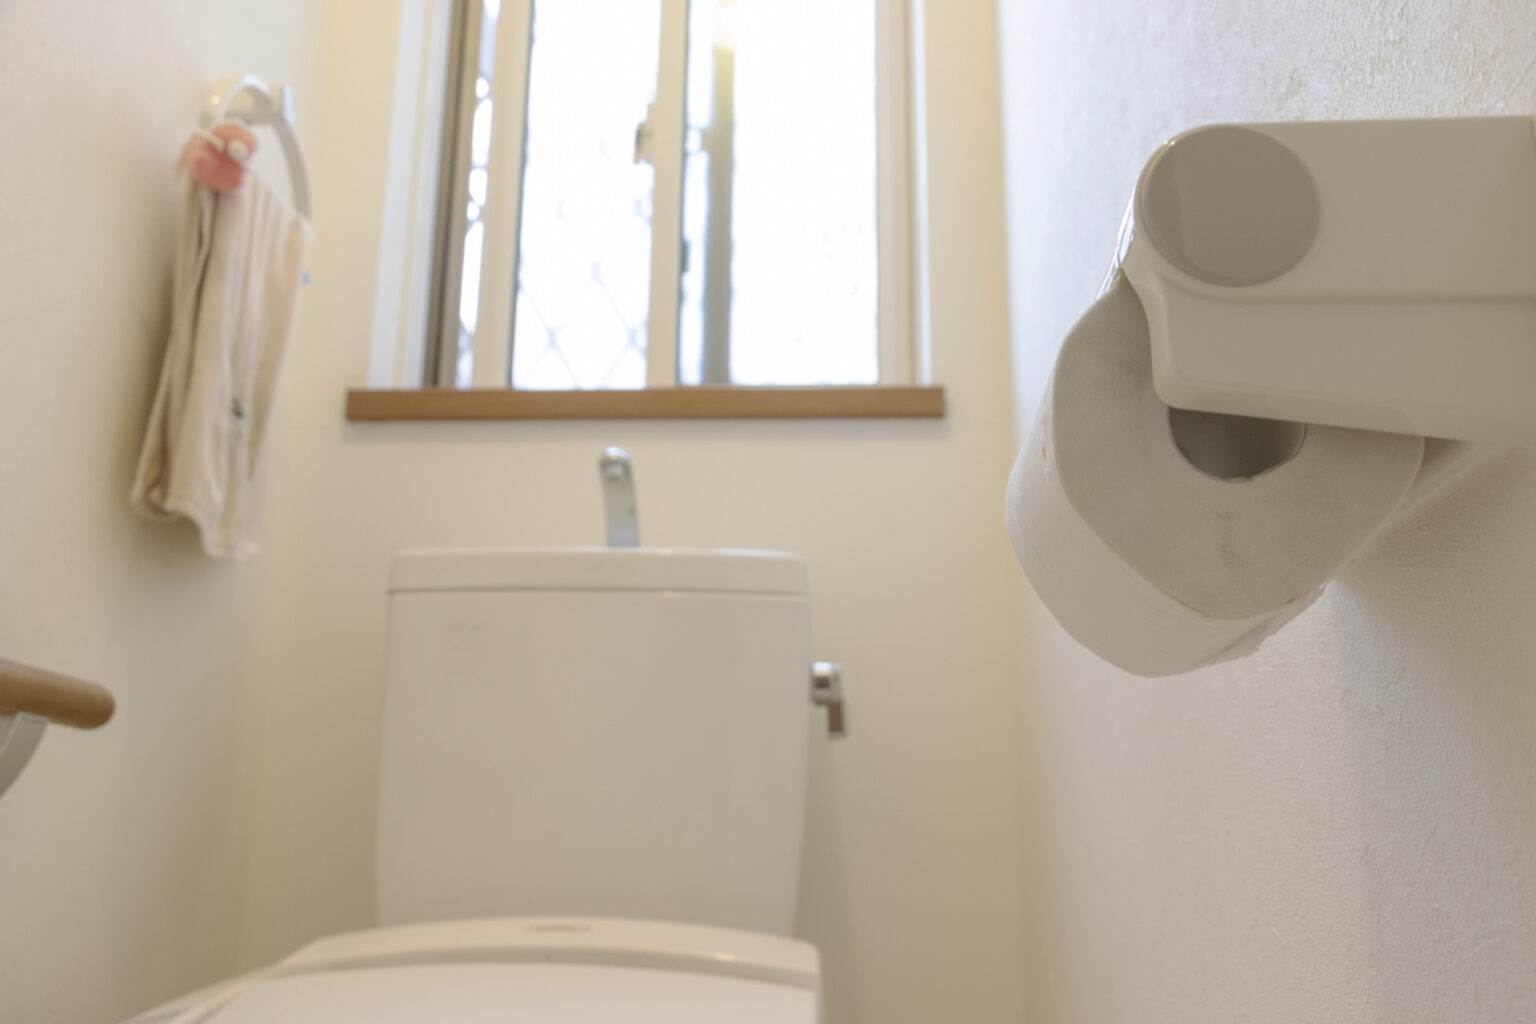 トイレのタンクで水漏れが起きたときの対処方法と注意点について 大阪のトイレのつまり水漏れ、水道修理はおおさか水道職人